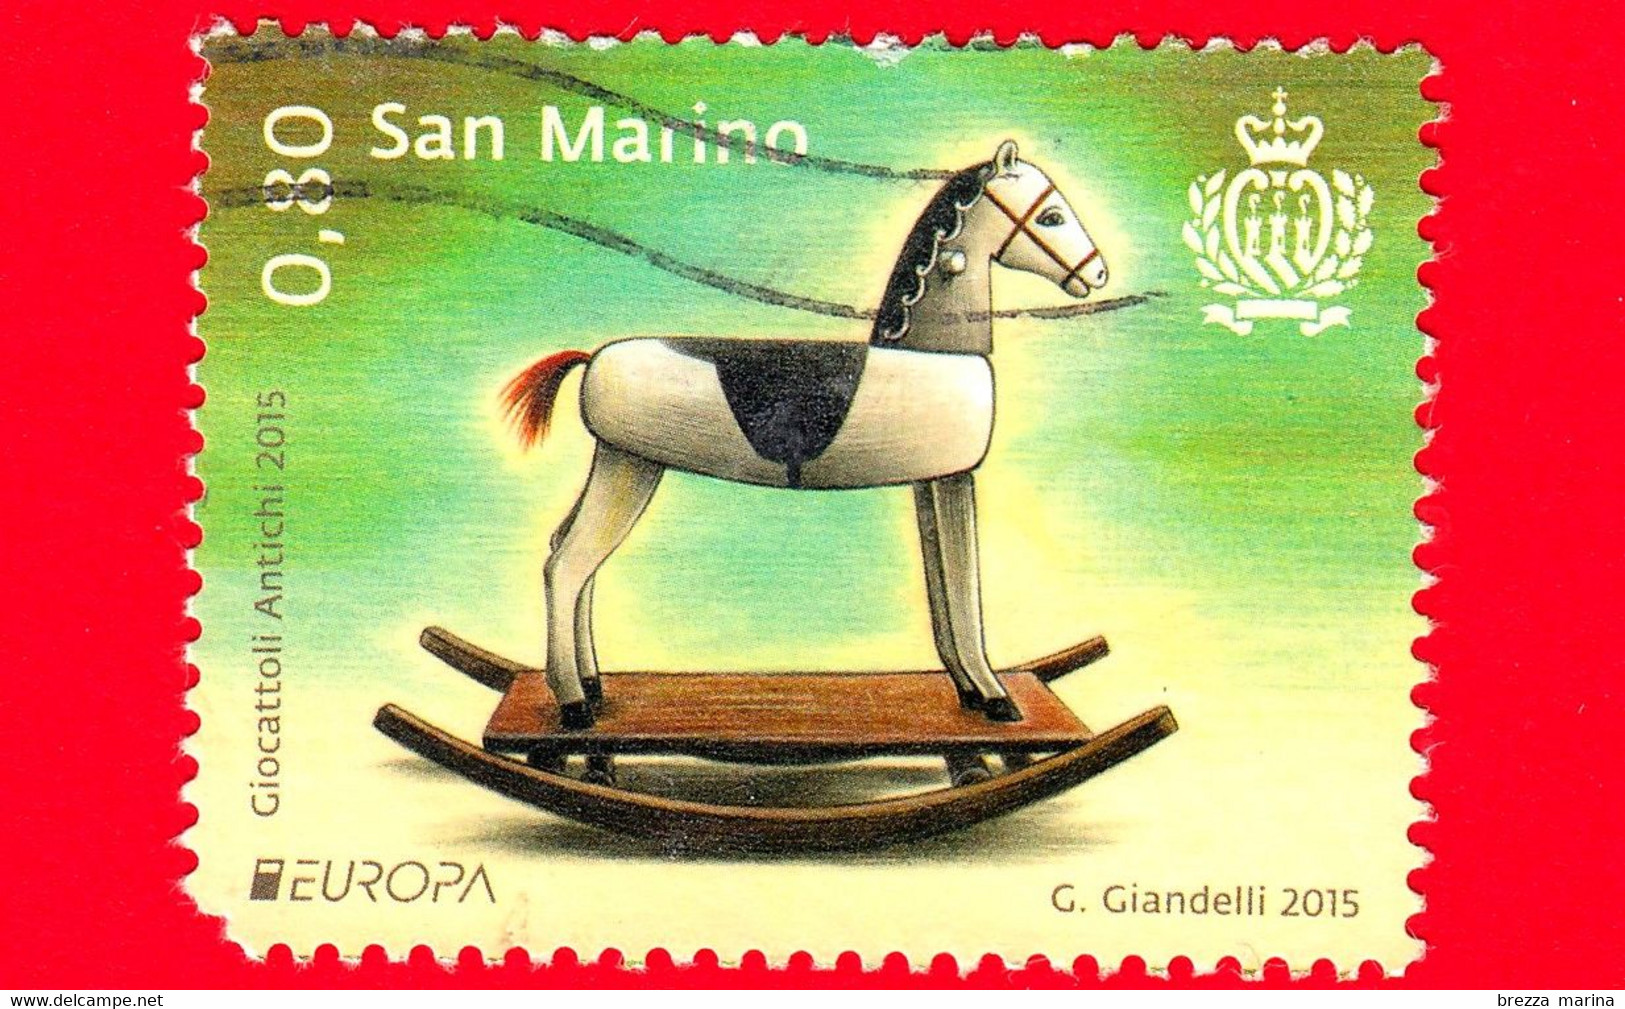 SAN MARINO - Usato - 2015 - Europa - Antichi Giocattoli - Cavallo A Dondolo  - 0.80 - Vedi ... - Used Stamps